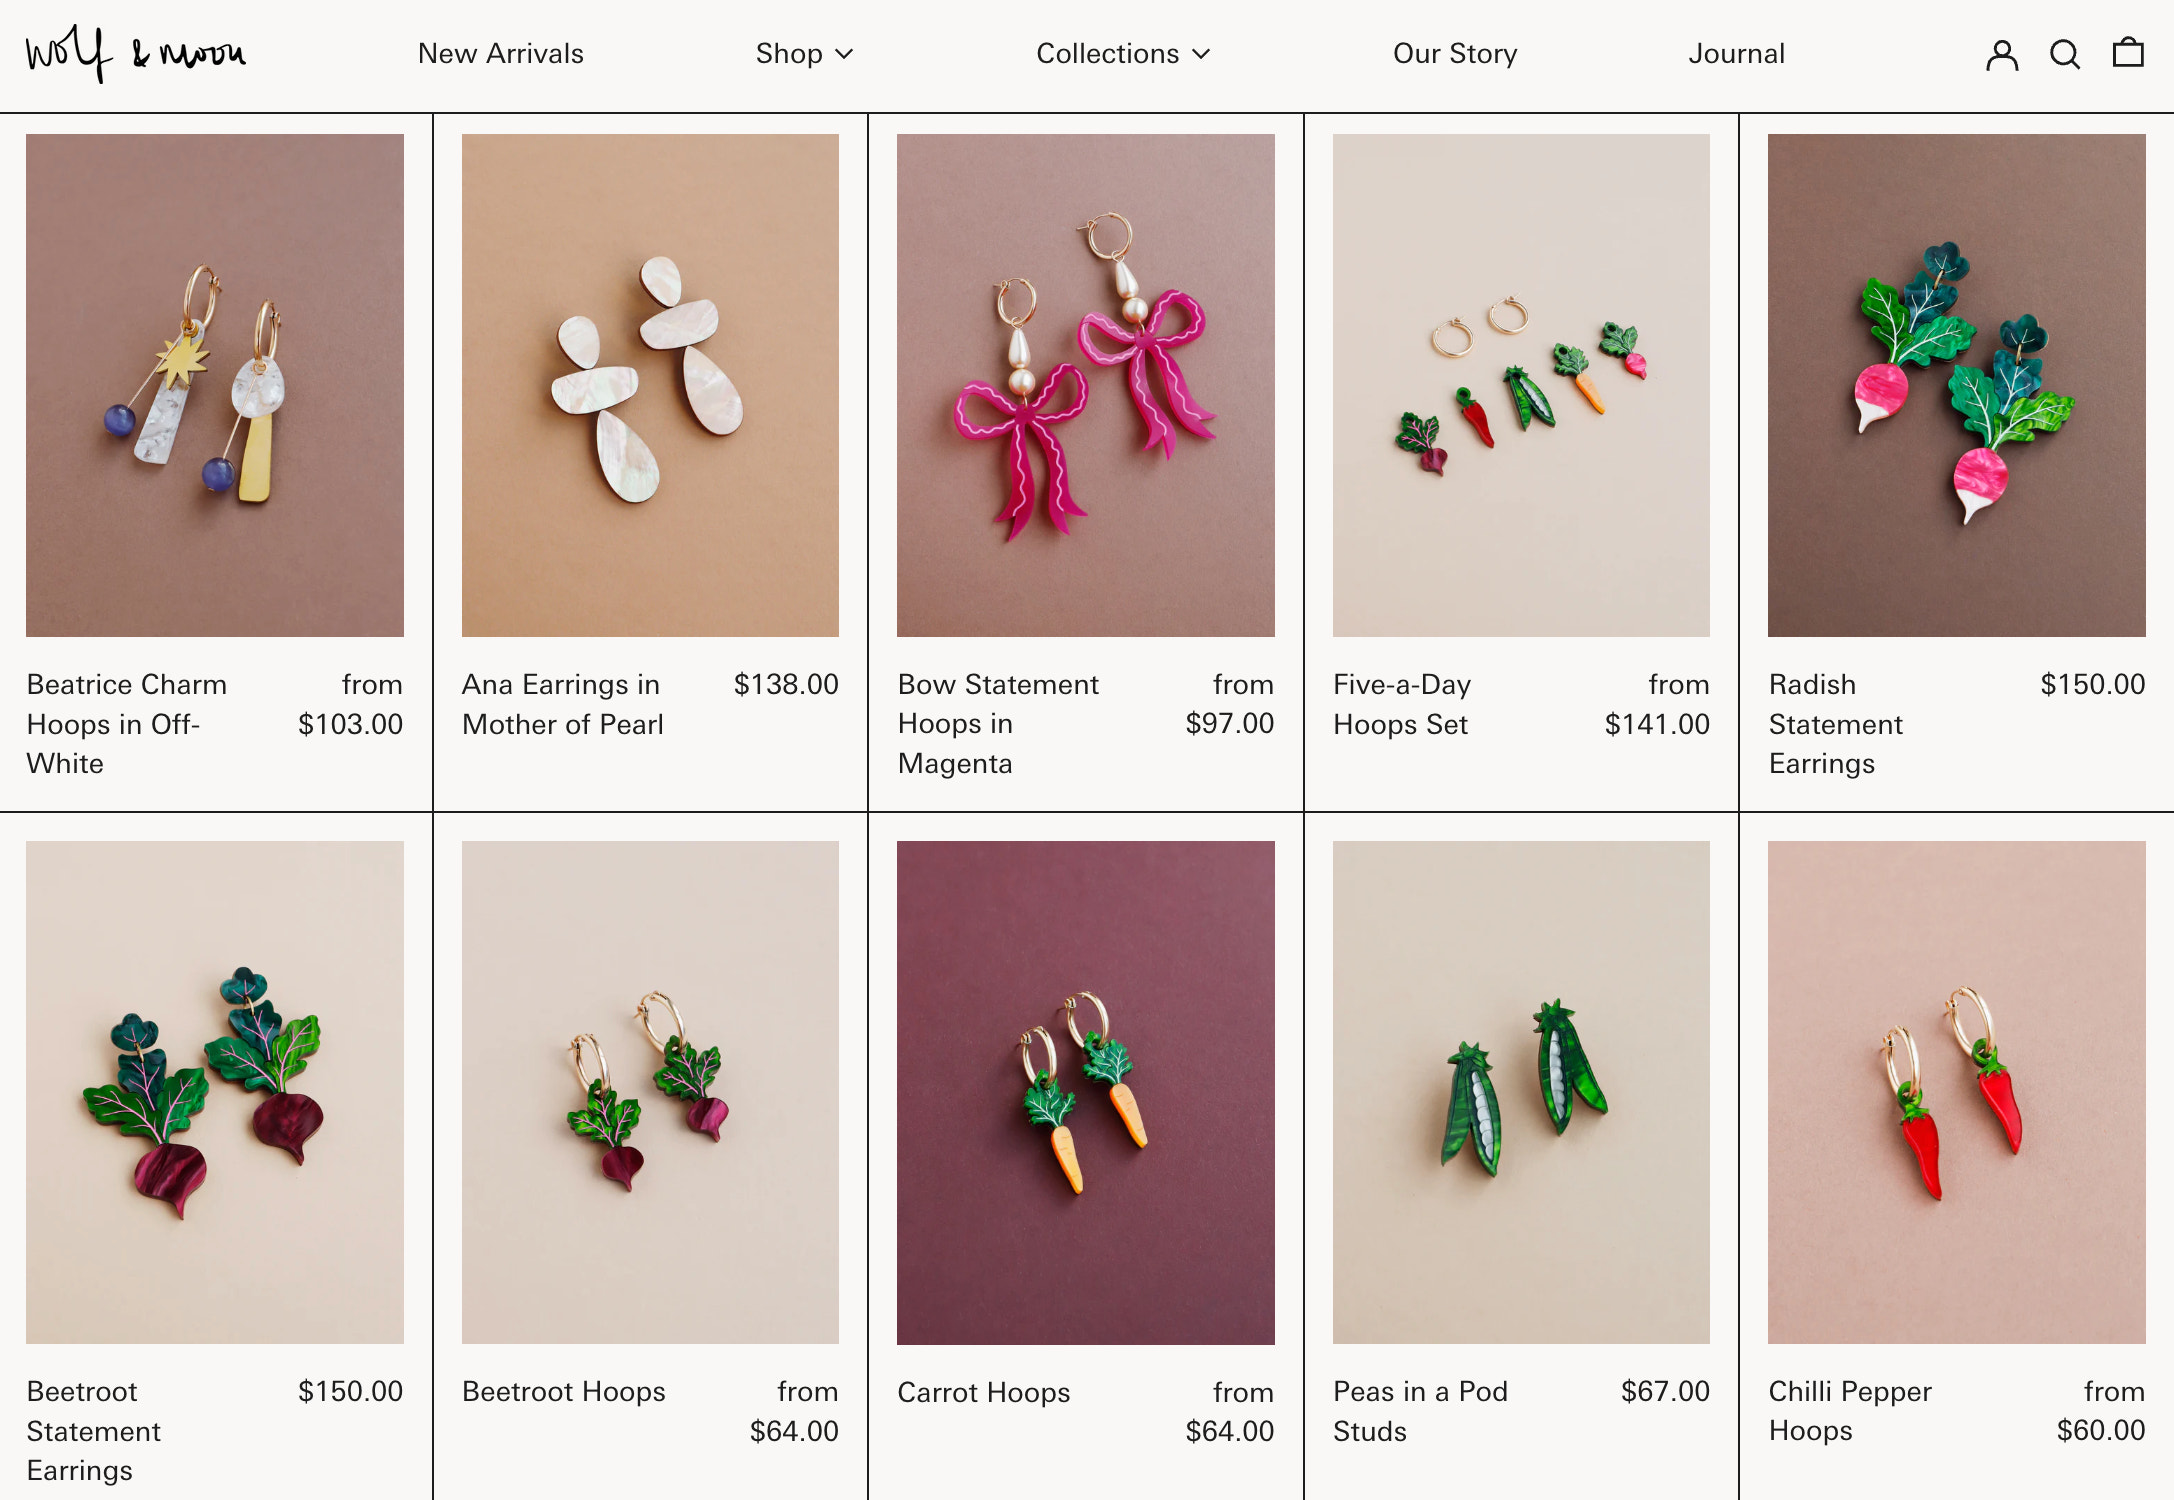 Kits création de bijoux adulte 📿 – JOY - Concept Store